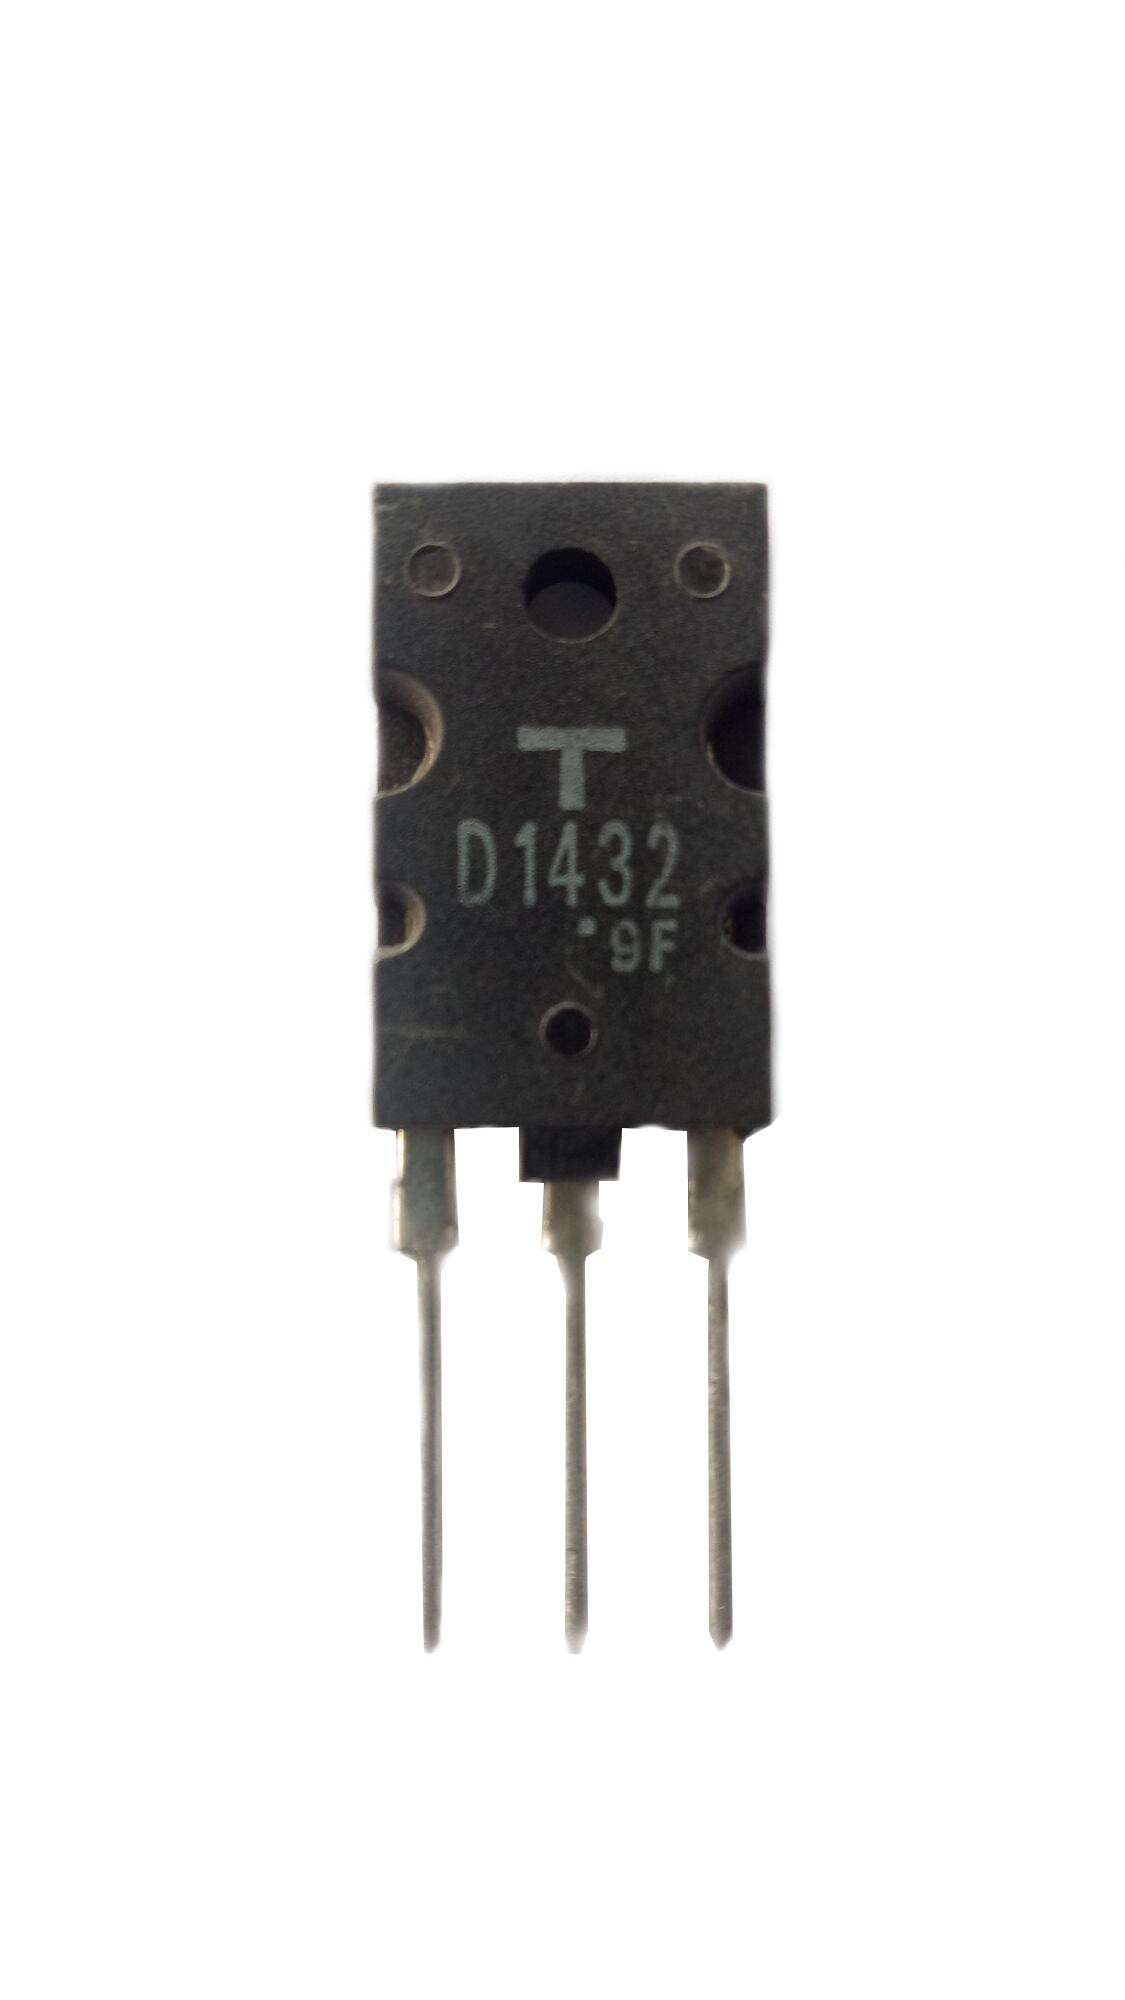 2SD1432 Componente elettronico, circuito integrato, transistor, 3 contatti